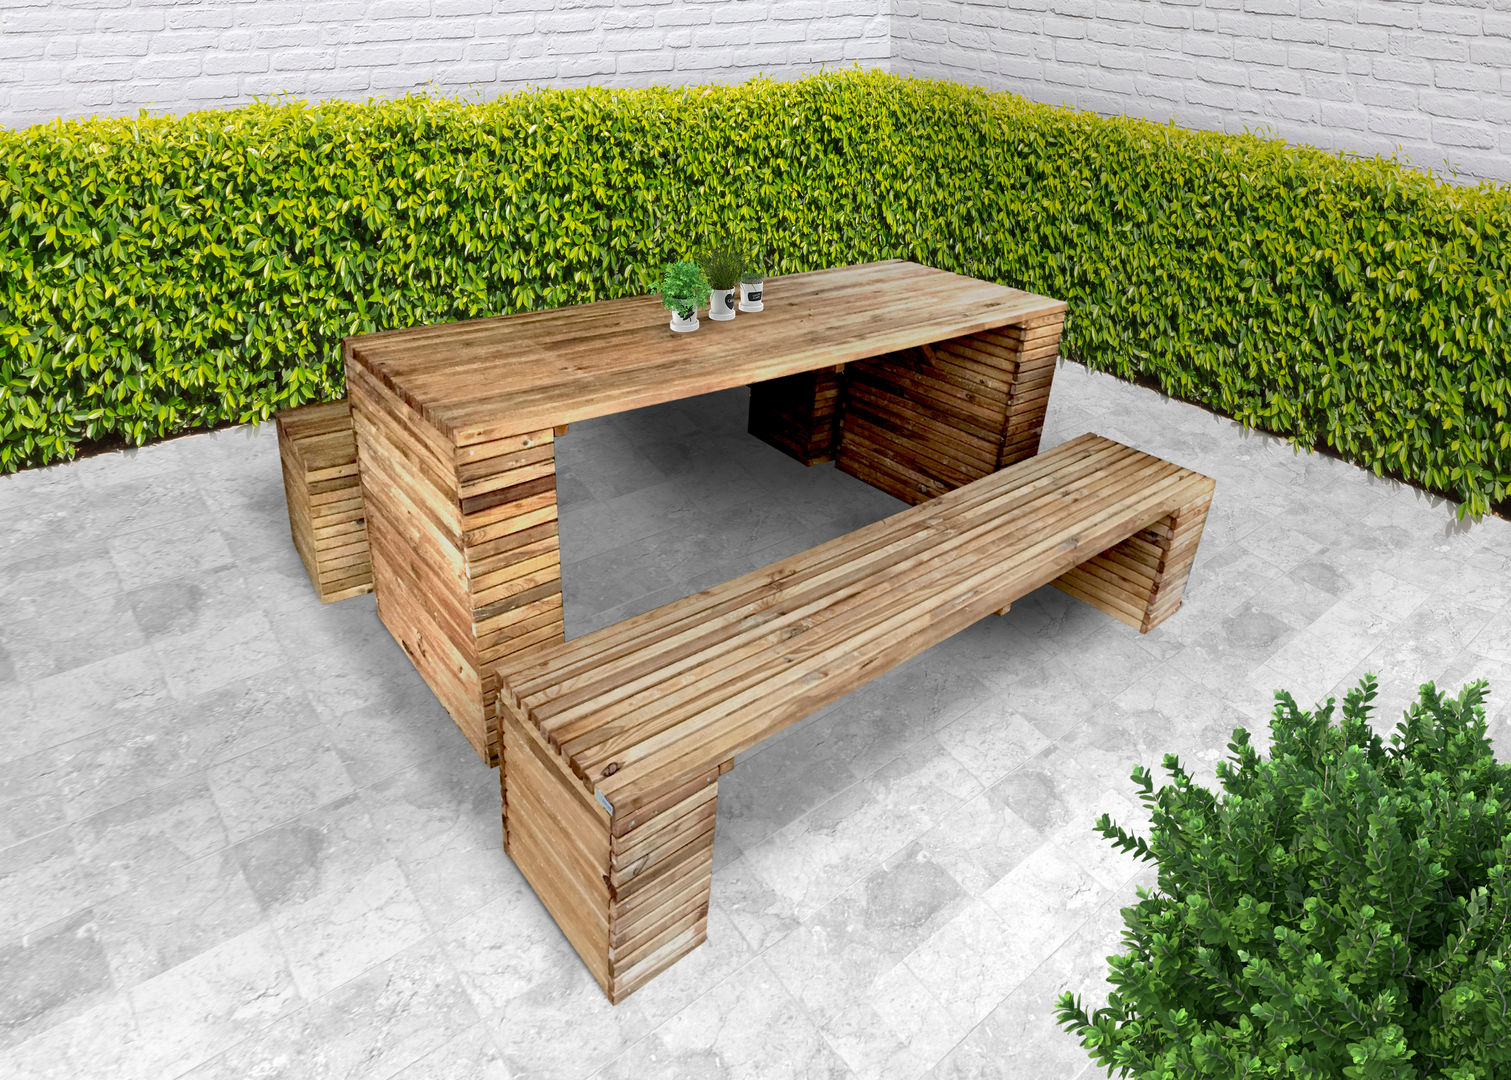 TAVOLI PICNIC, ONLYWOOD ONLYWOOD Vườn phong cách kinh điển Gỗ Wood effect Furniture